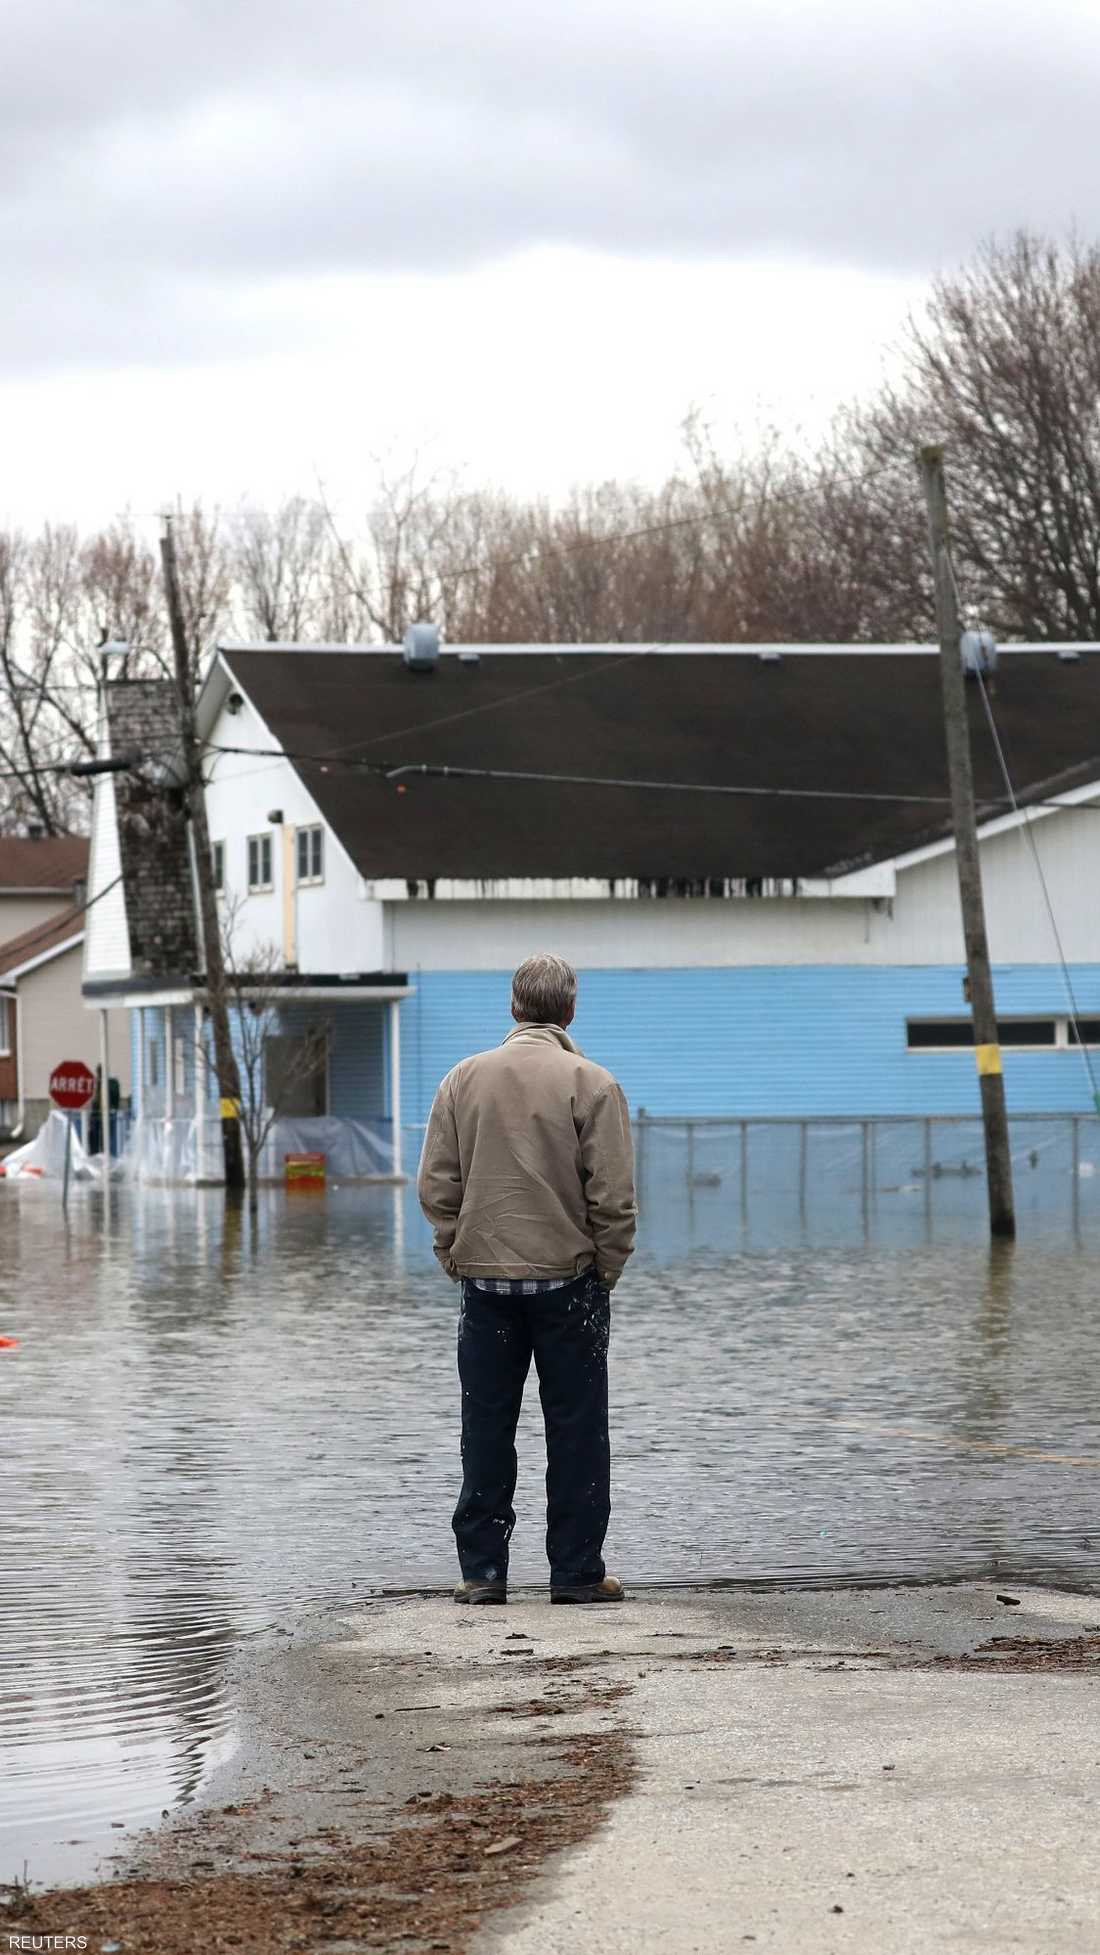 أعلنت أوتاوا الكندية حالة الطوارئ بشكل احترازي، خوفا من وصول الفيضانات إلى بعض منازل المدينة، خاصة مع توقع تساقط أمطار غزيرة.